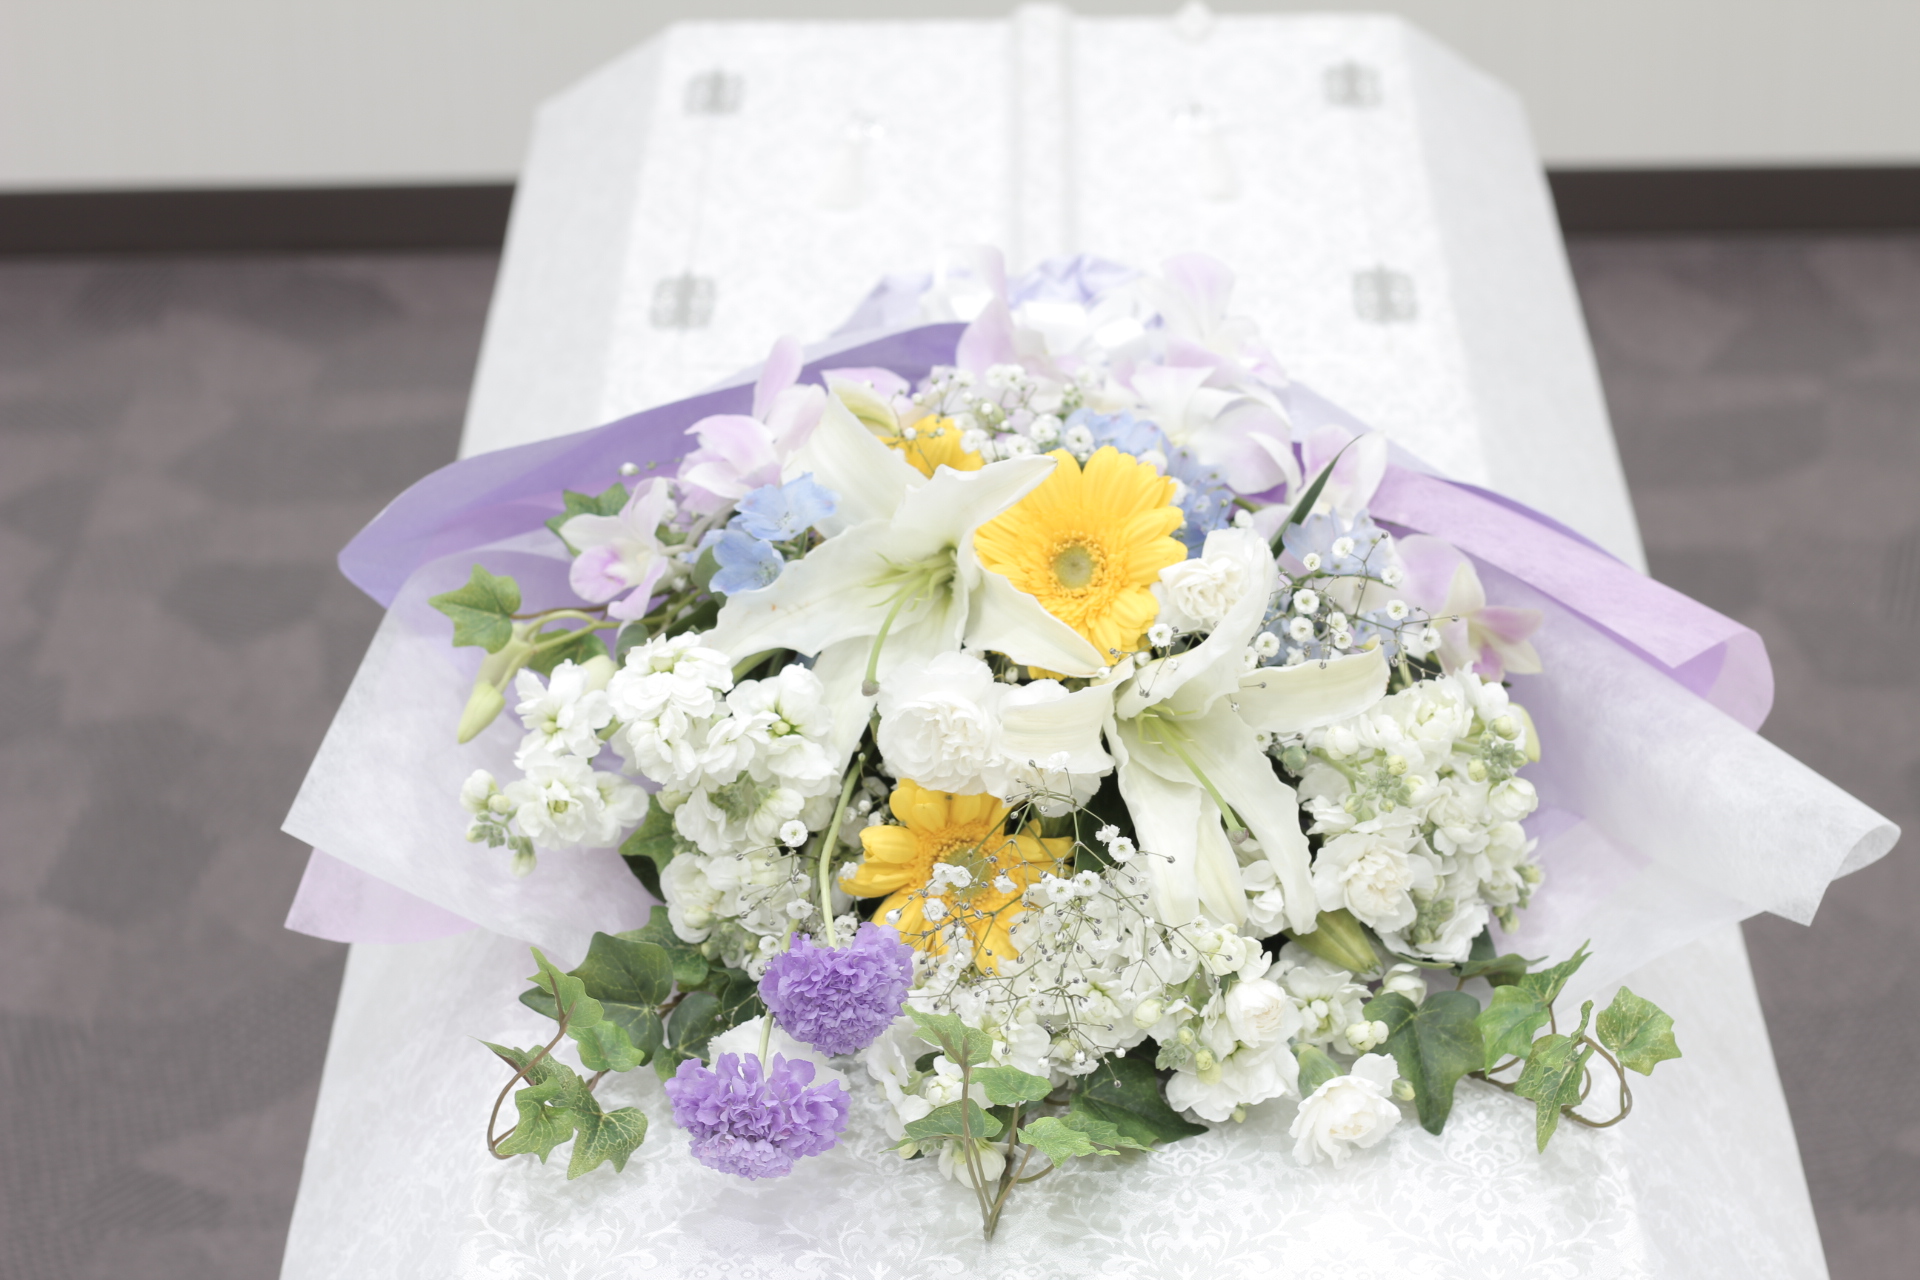 おてごろ葬 カラフルなお別れの花束 おてごろ葬 福岡 大阪の直葬や火葬式などの格安葬儀